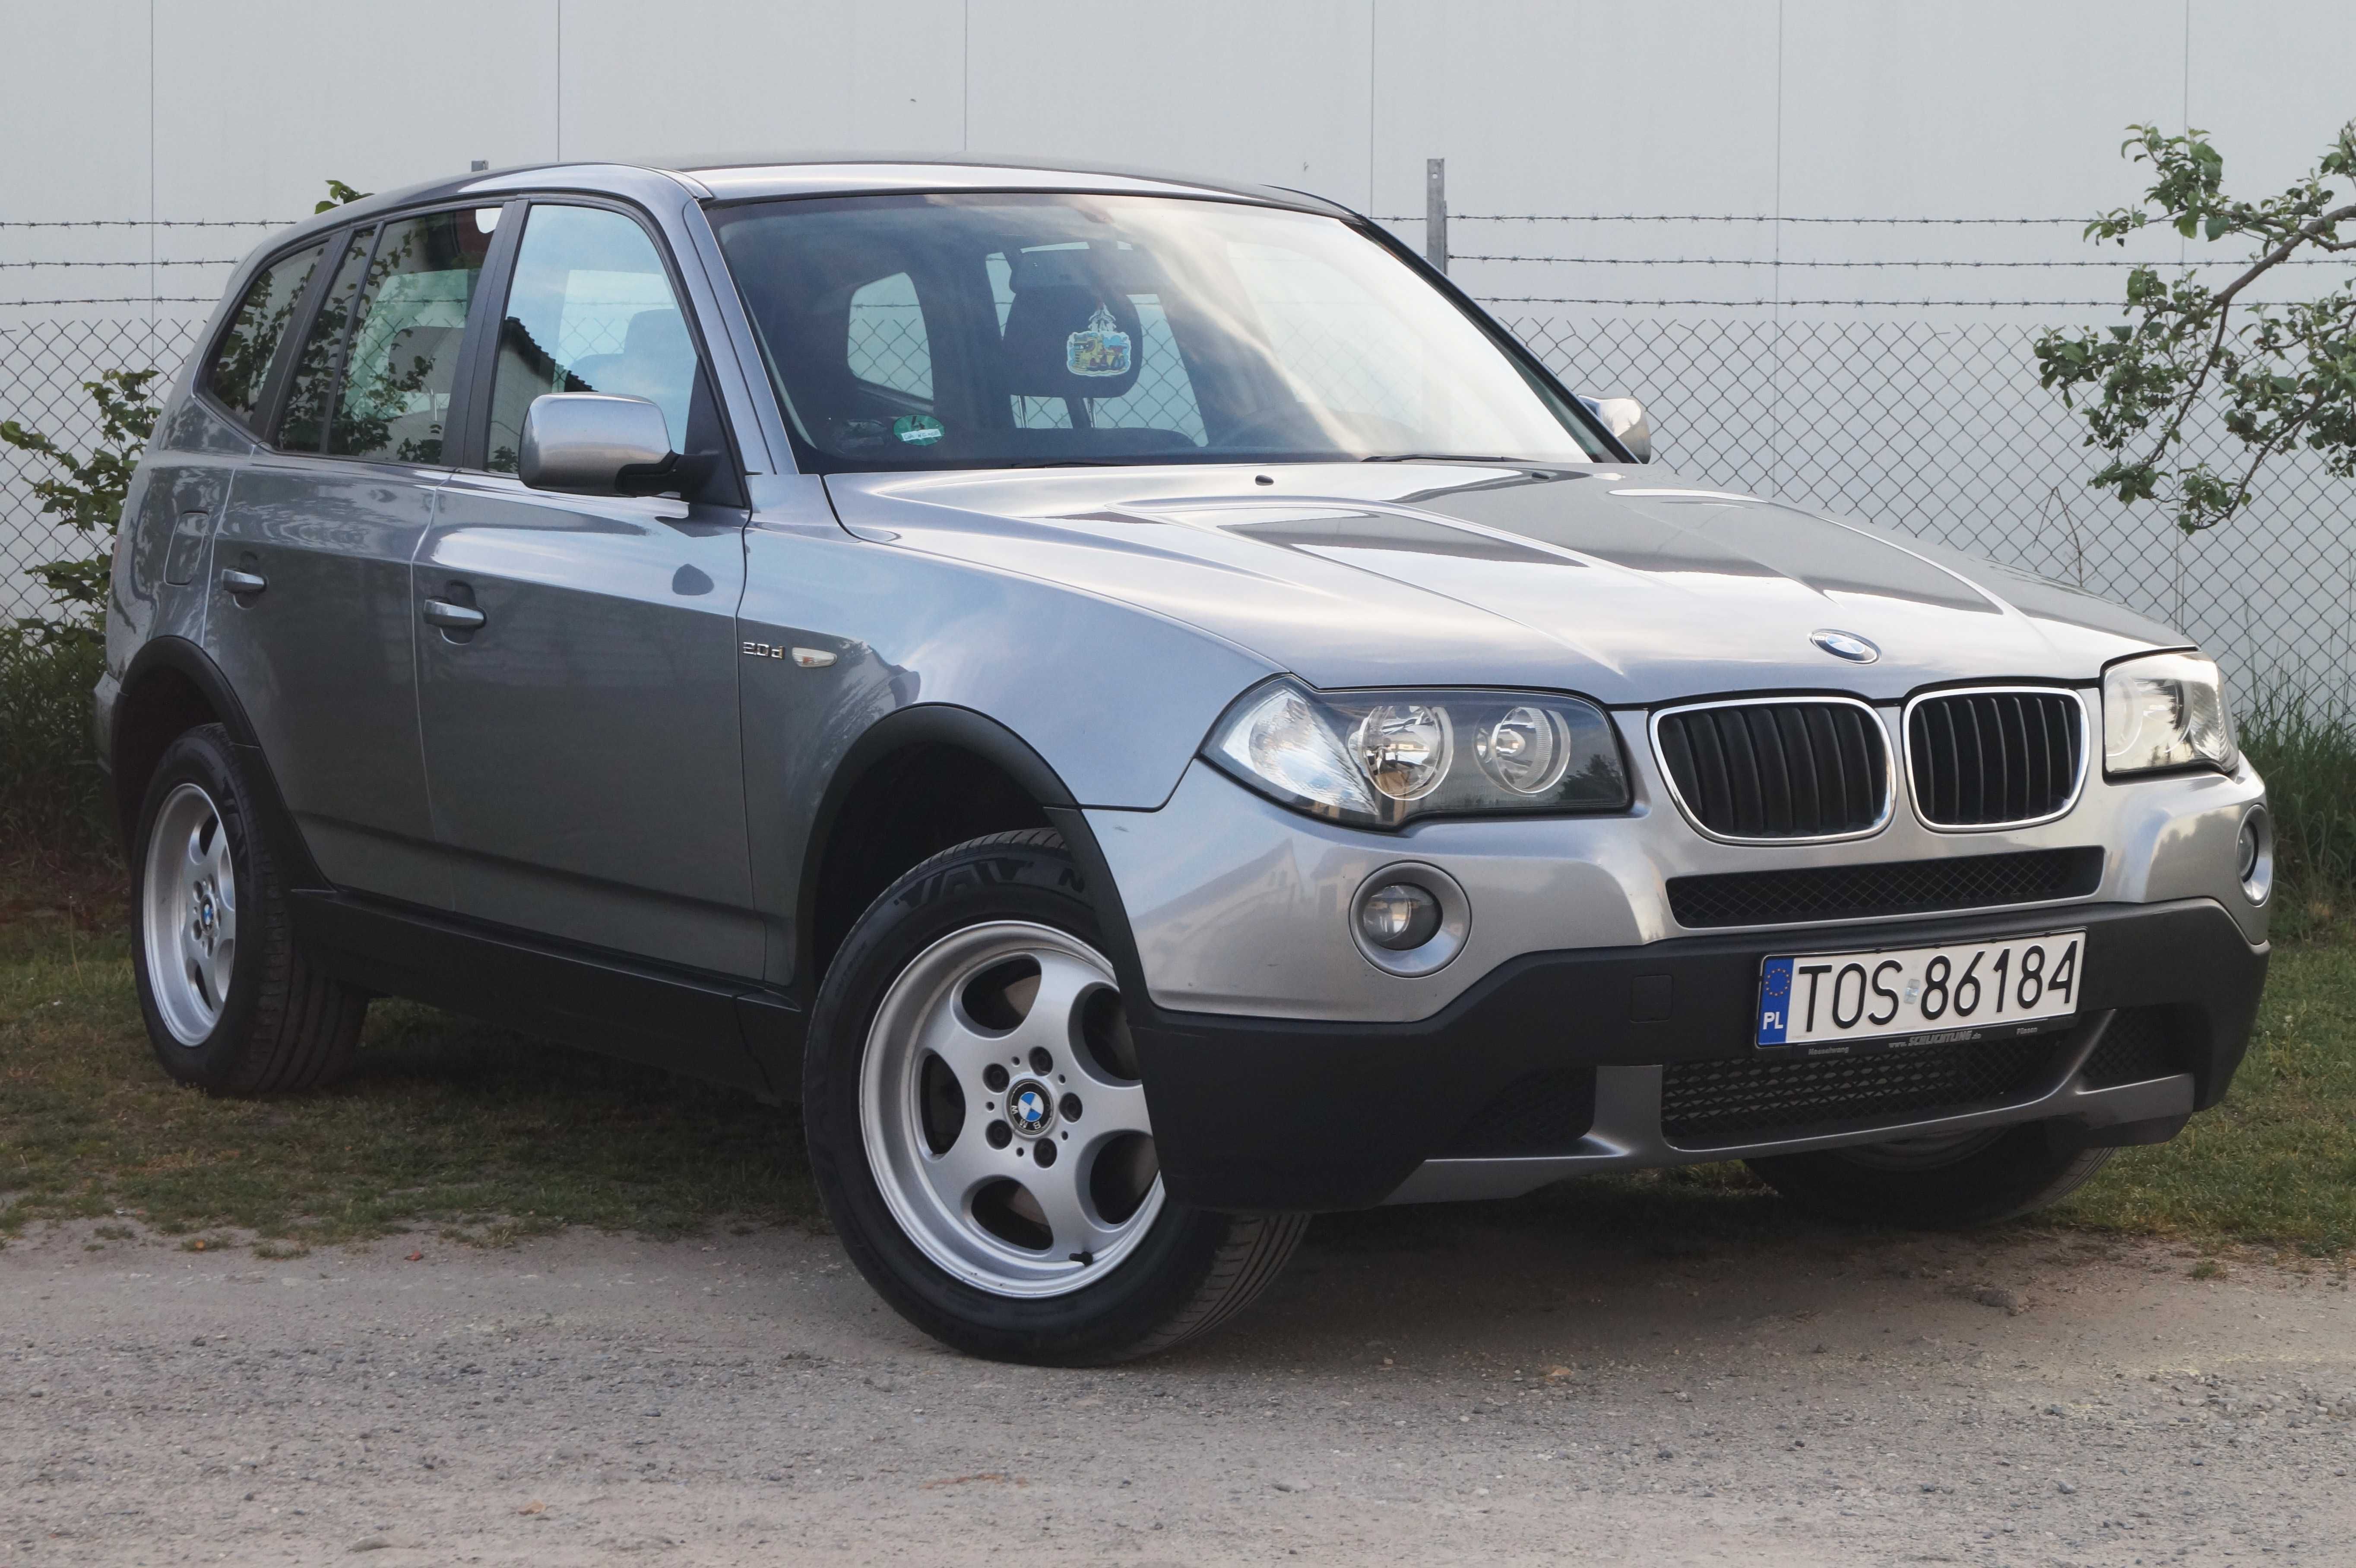 BMW X3 2007r Lift 2.0d 150km 4x4 hak klimatronik alu 17 188tyśkm